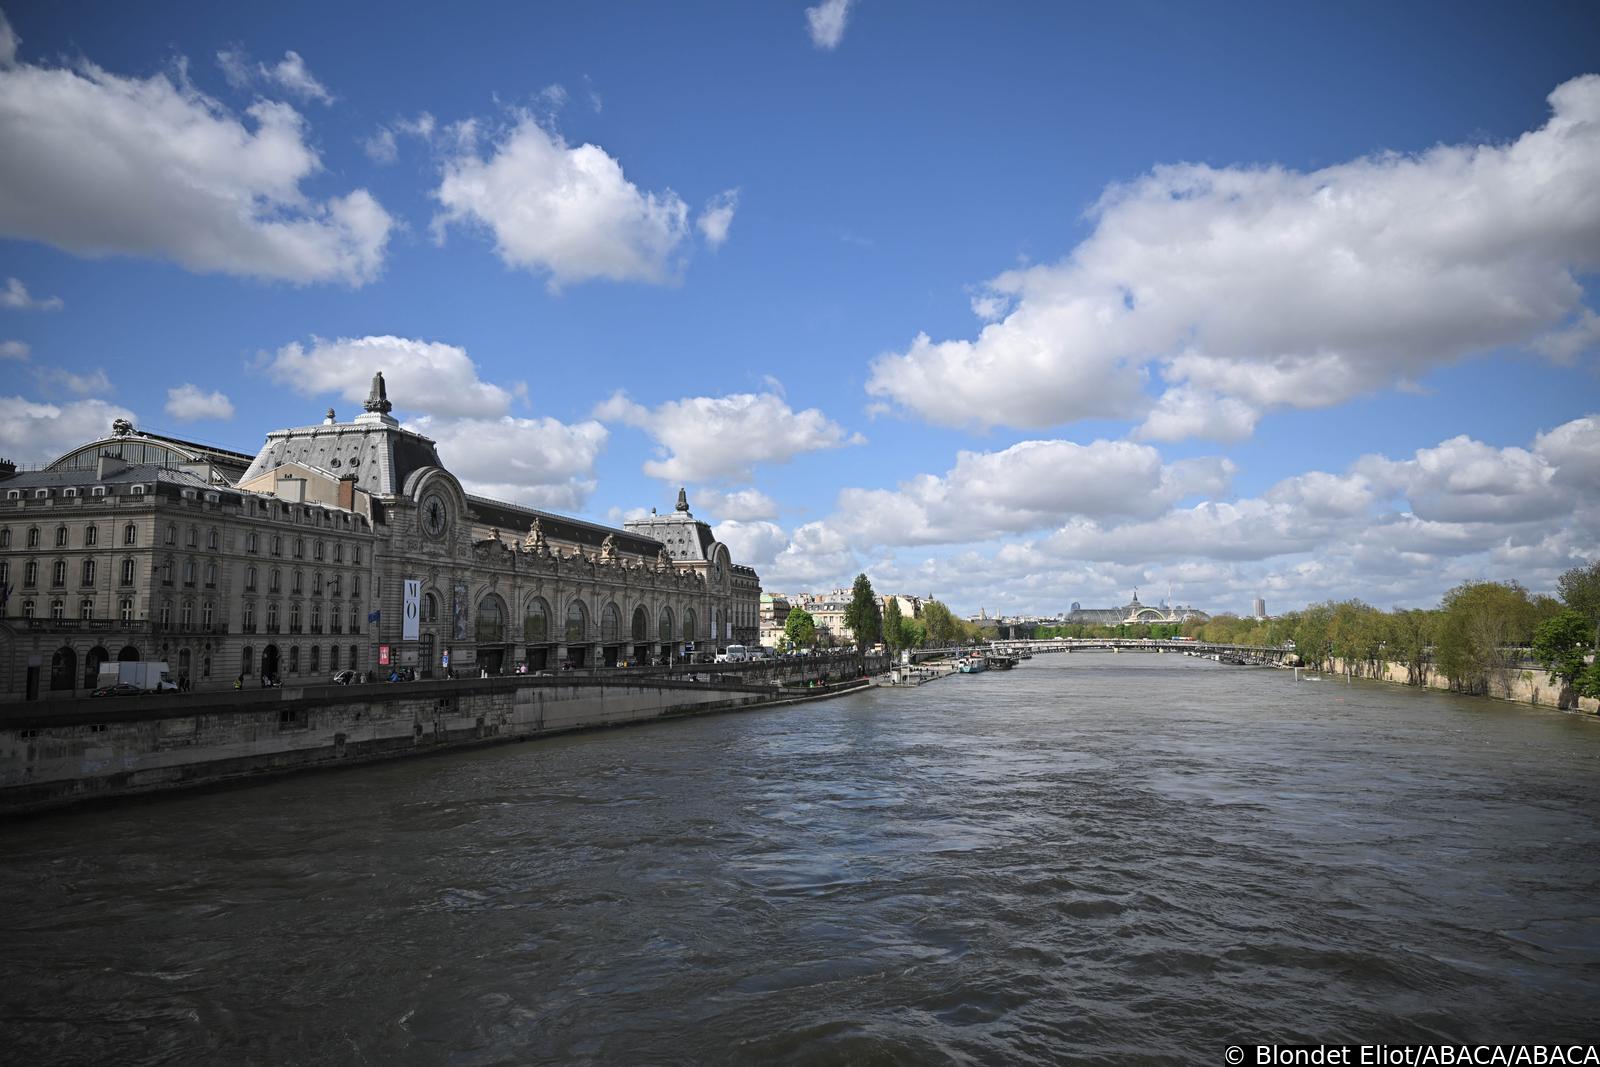 OI Pariz: Triatlonsko plivanje bi moglo biti otkazano zbog zagađenosti rijeke Sene